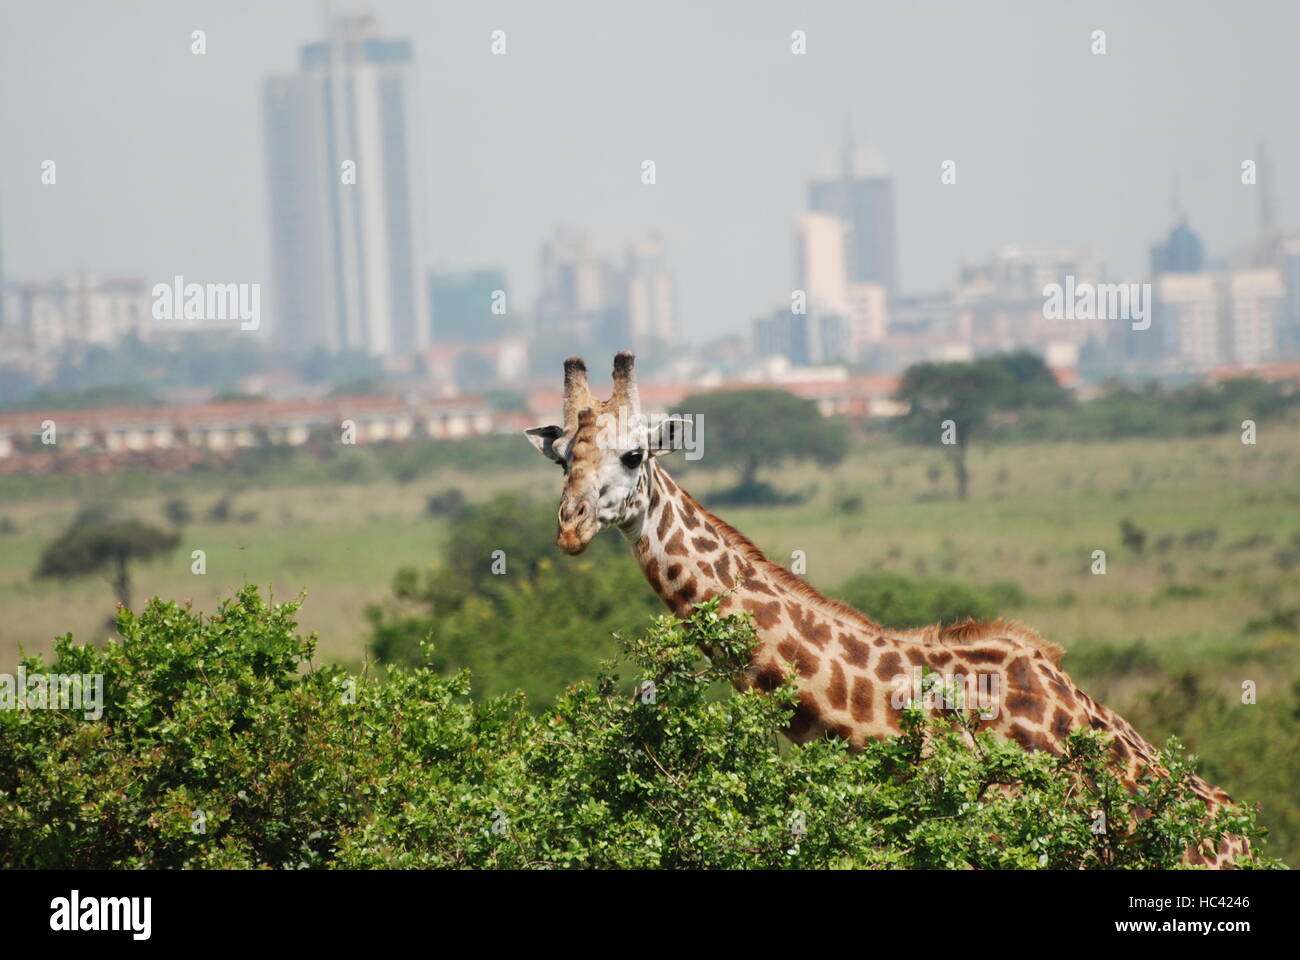 Nairobi, Kenia. Xiii Dec, 2015. ACHTUNG: DIESER BEITRAG DARF nicht vor ABLAUF DER SPERRFRIST, 08. Dezember 00.01 Uhr, VERÖFFENTLICHT WERDEN! ARCHIV - Eine Giraffe ist am 13.12.2015 im del Parco Nazionale di Nairobi zu sehen. In den letzten Jahren ist Hauptstadt Kenias Nairobi unmittelbar bis an die Parkgrenzen herangewachsen. (Zu dpa 'Naturschützern warnen: Giraffen vom Aussterben bedroht) Foto: Thomas Burmeister/dpa/Alamy Live News Foto Stock